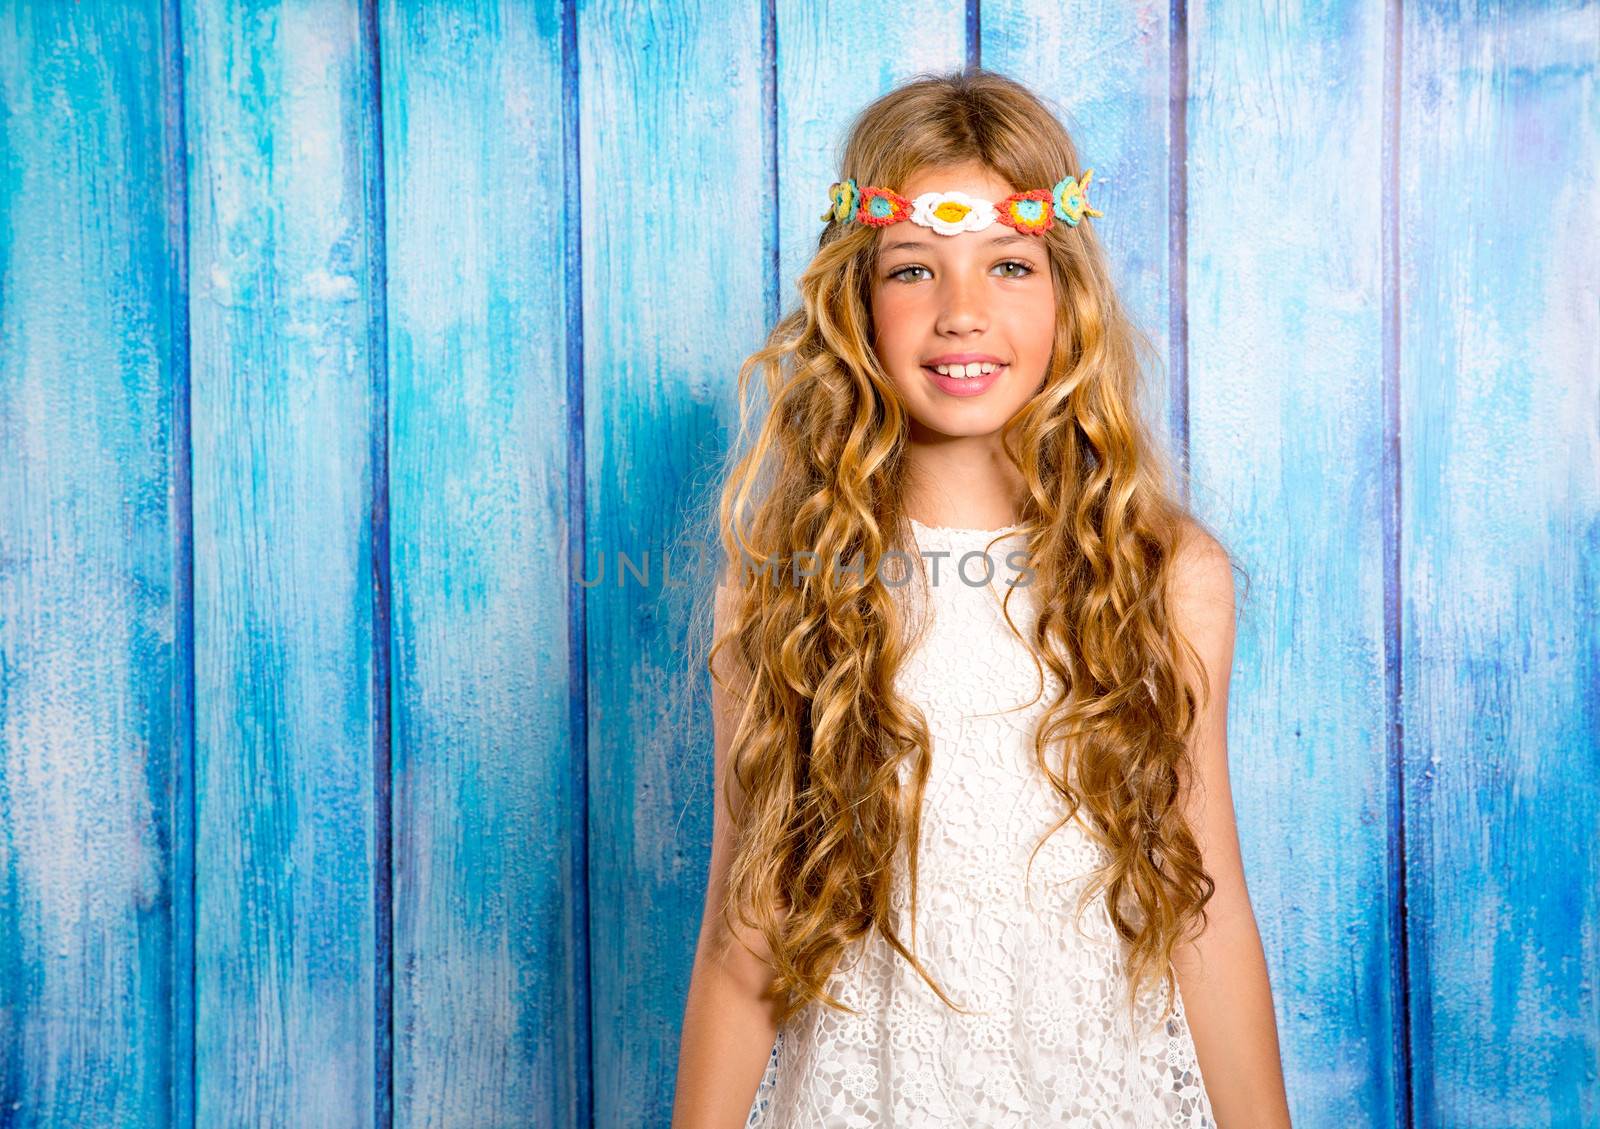 Blond happy hippie children girl smiling on blue grunge wood background